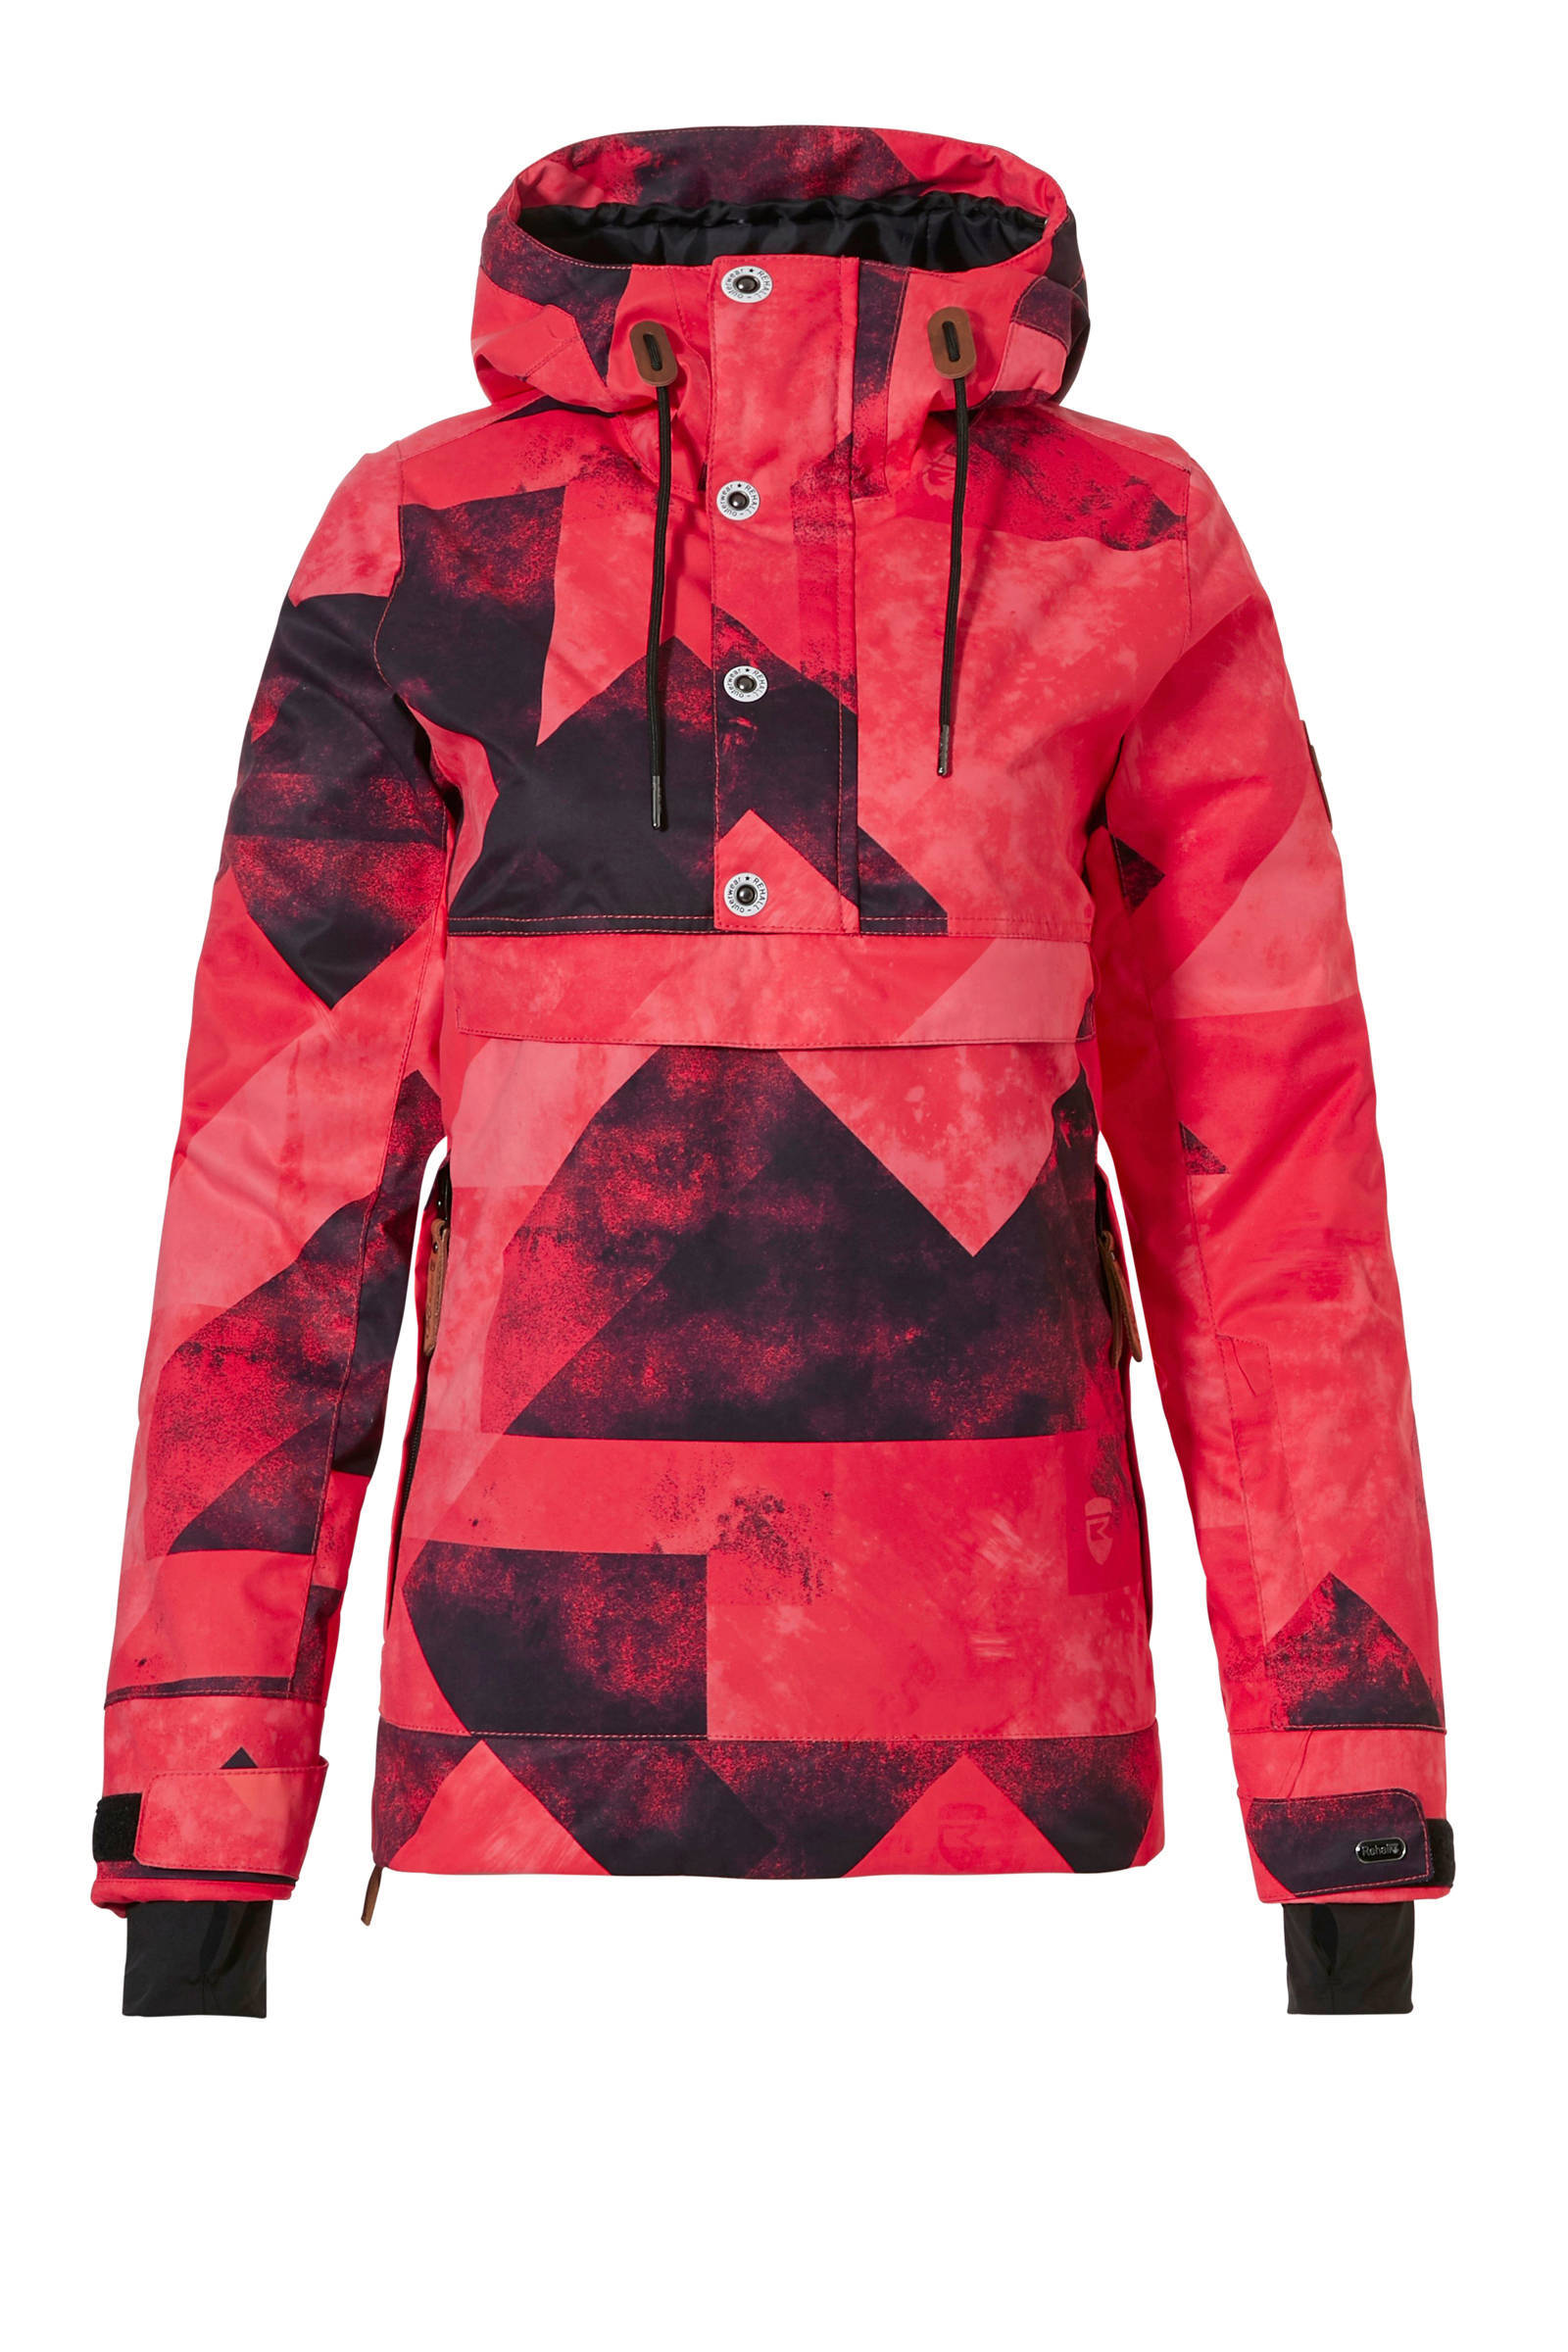 Rehall ski anorak Frida R rood/roze/zwart online kopen